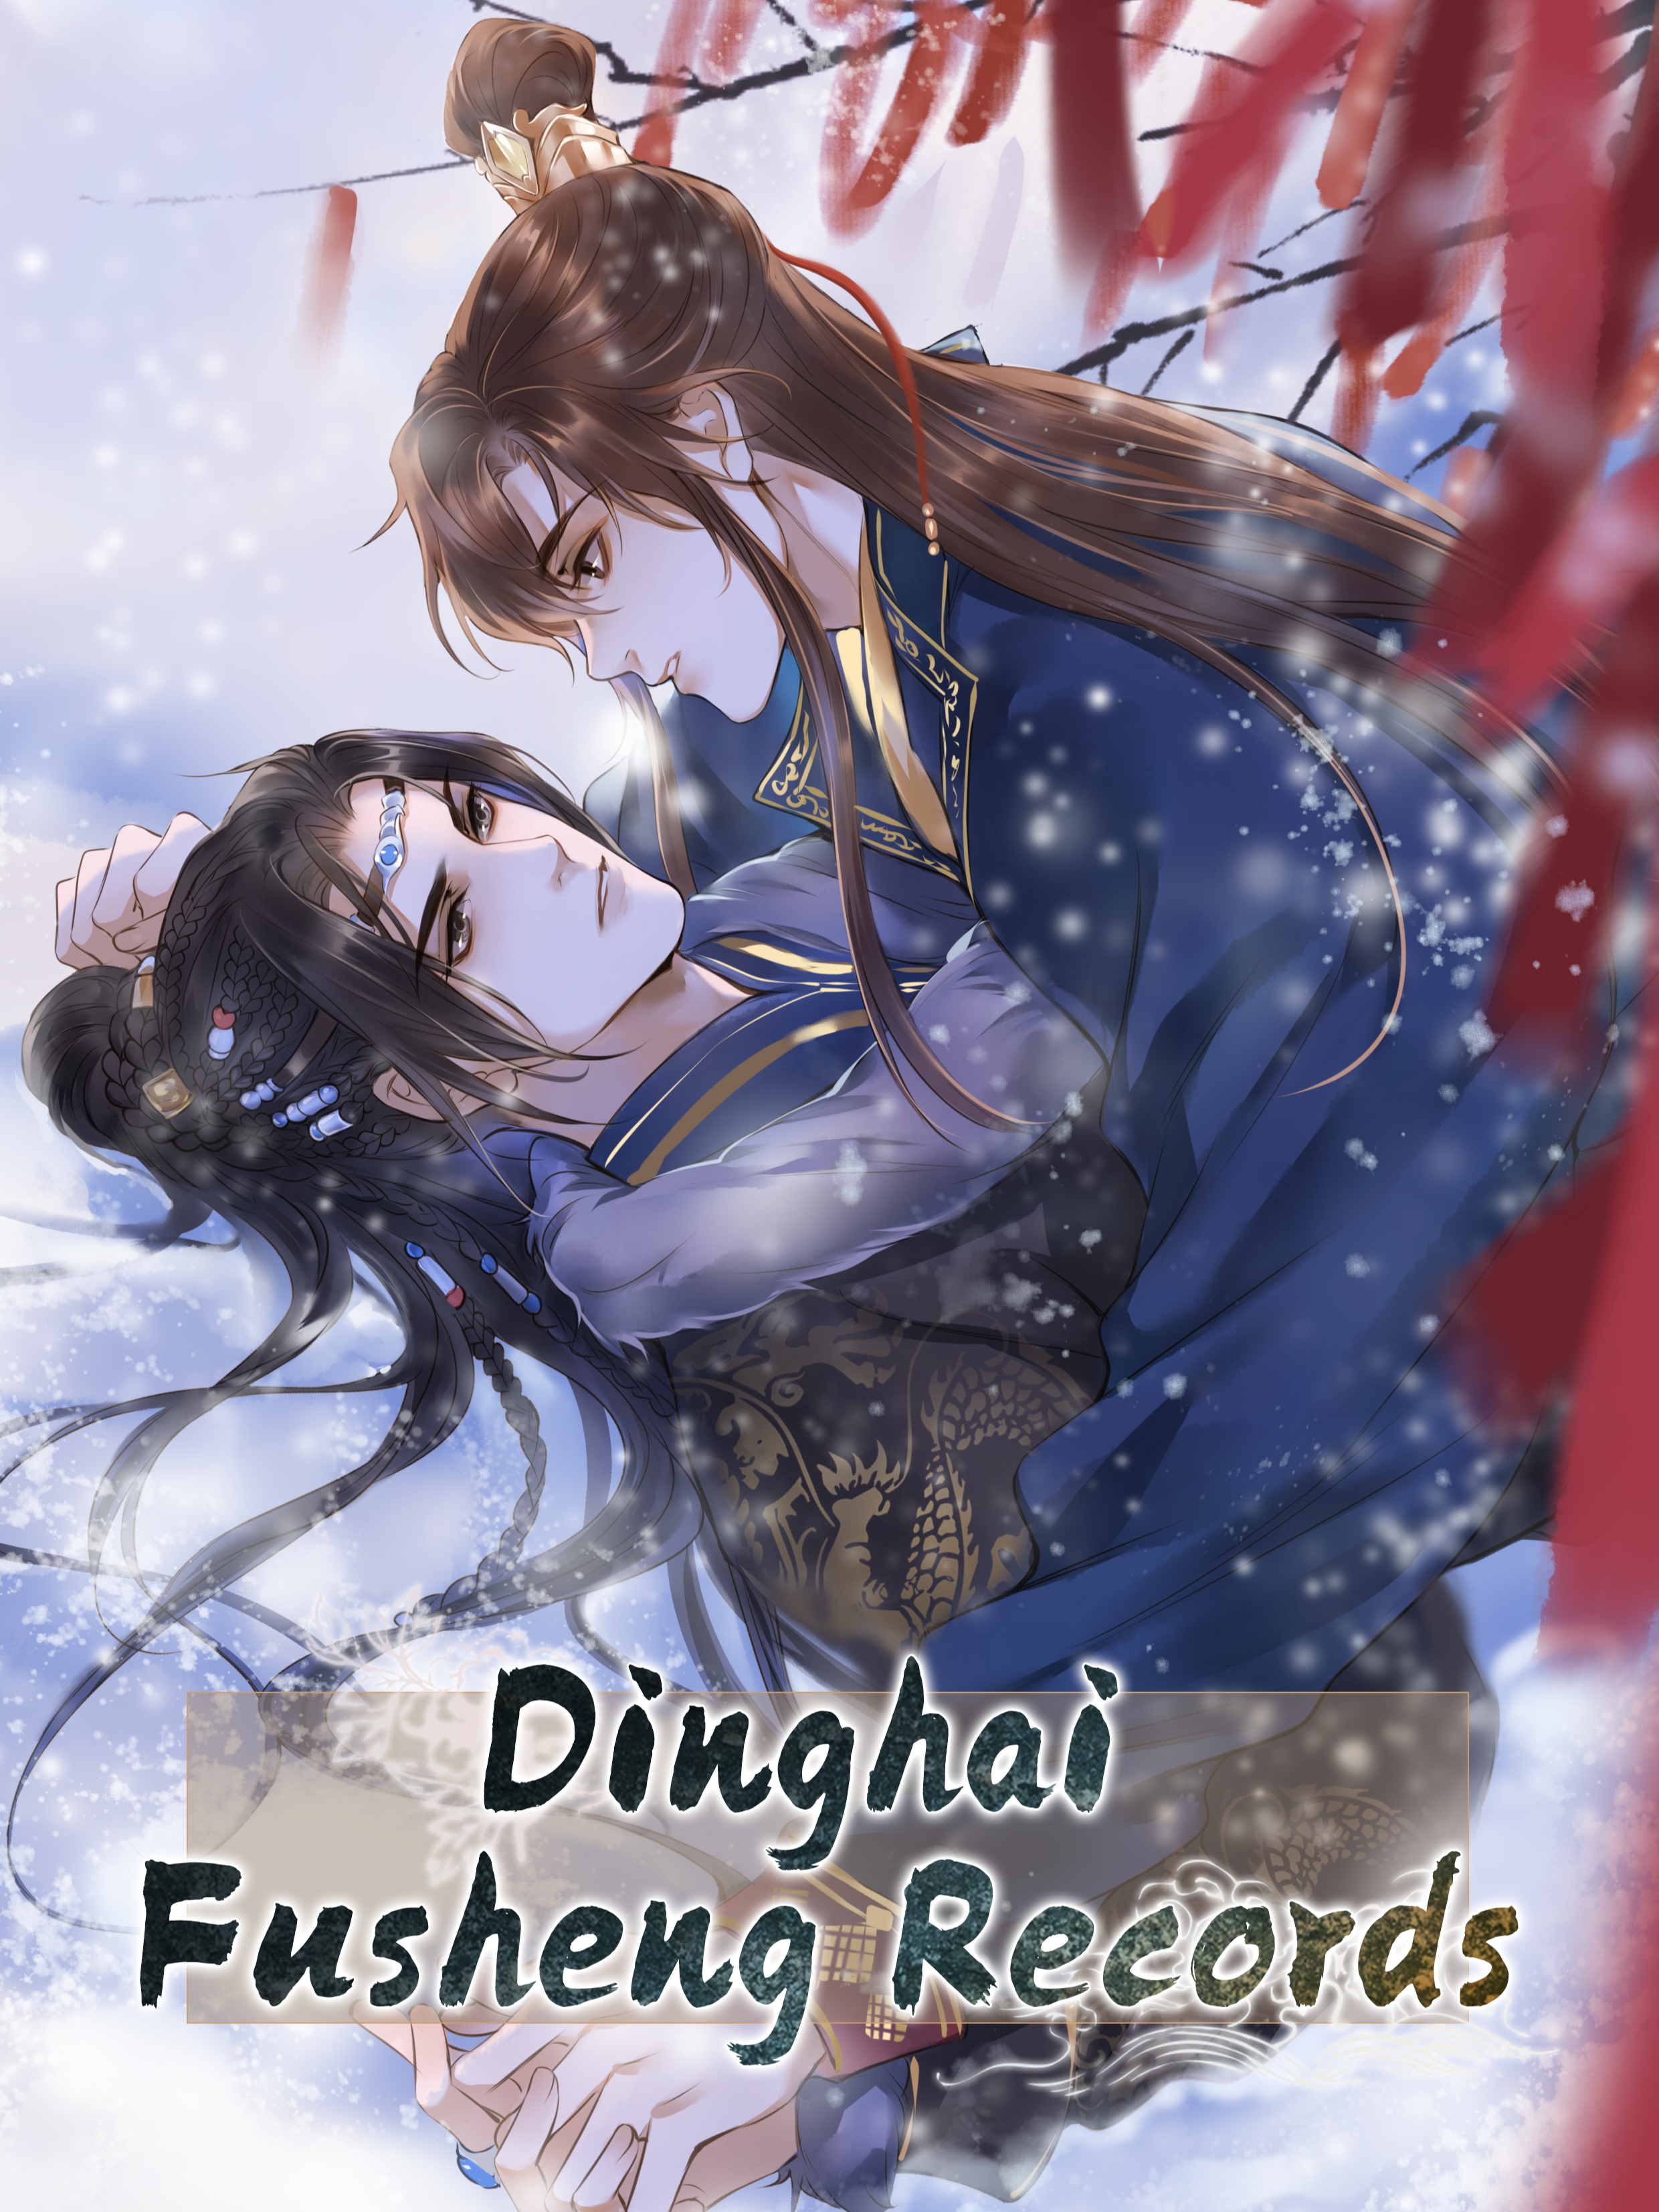 Dinghai fusheng records manga